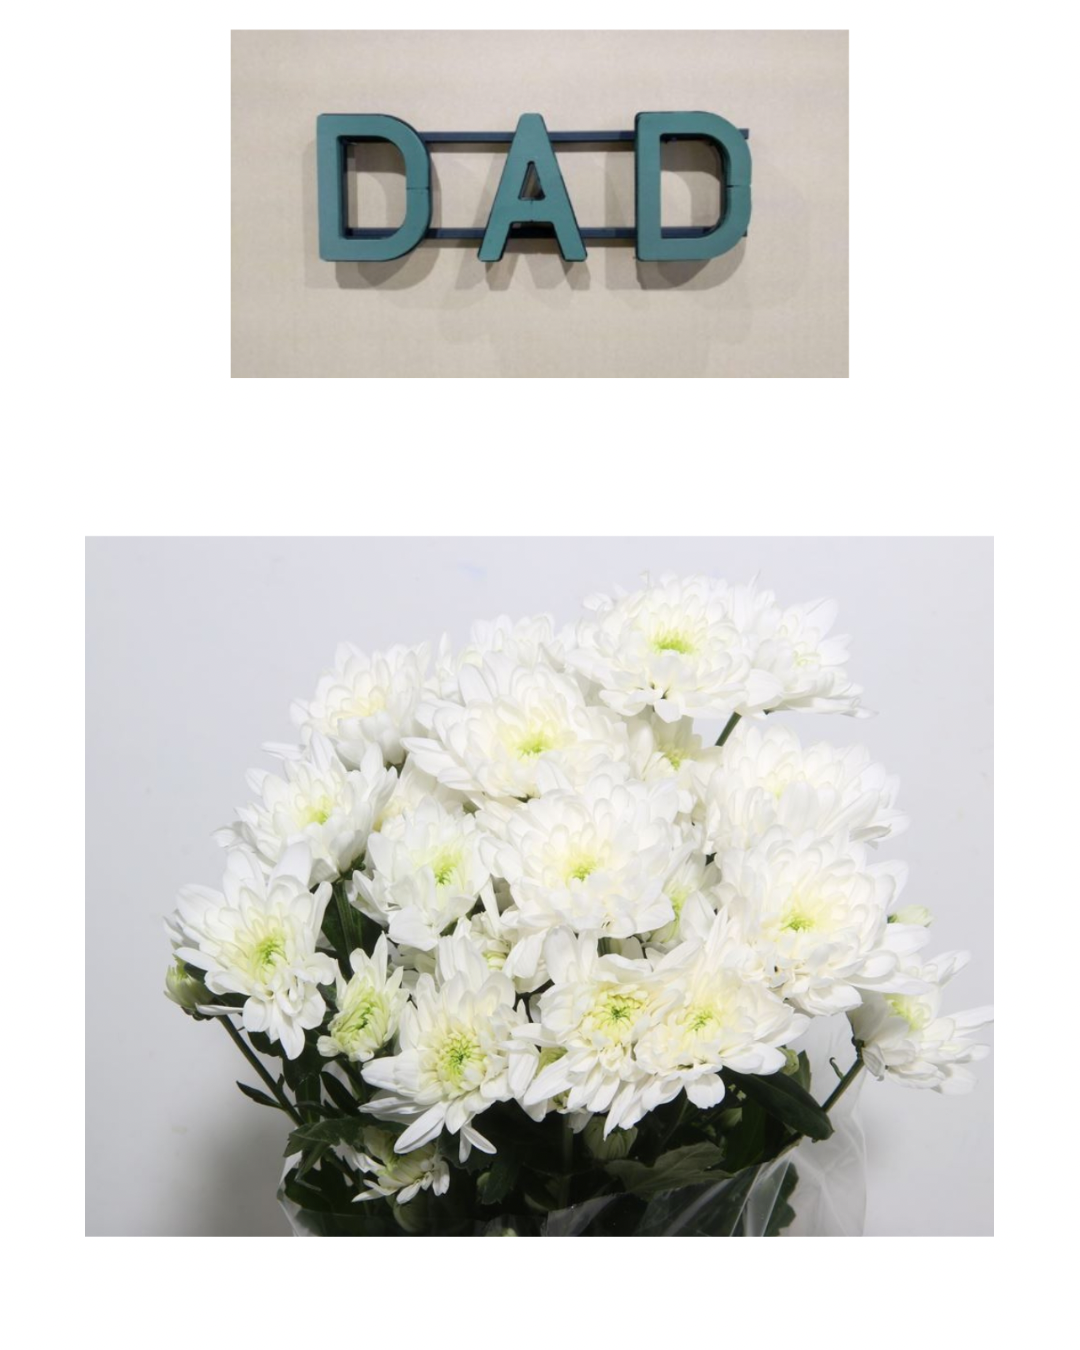 DIY Dad Funeral Tribute Kit